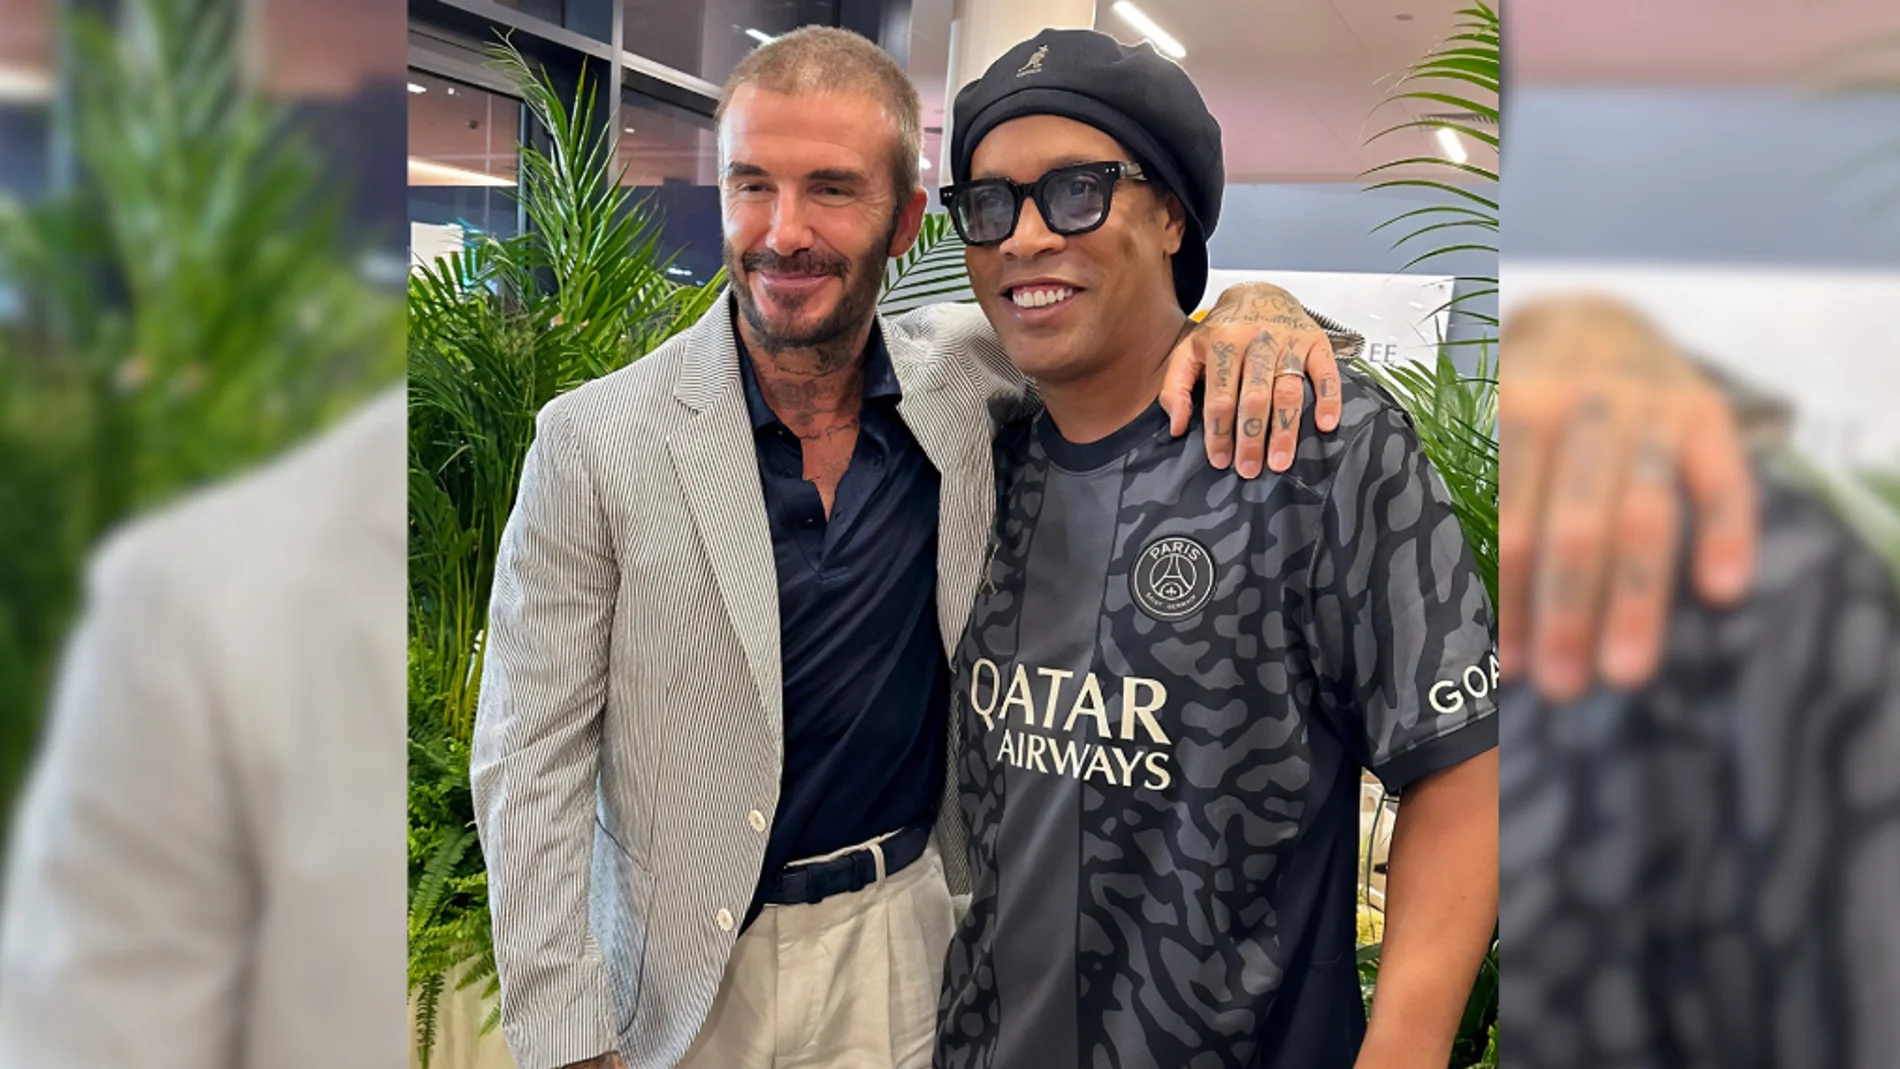 Ronaldinho y Beckham iluminan las redes con su encuentro legendario